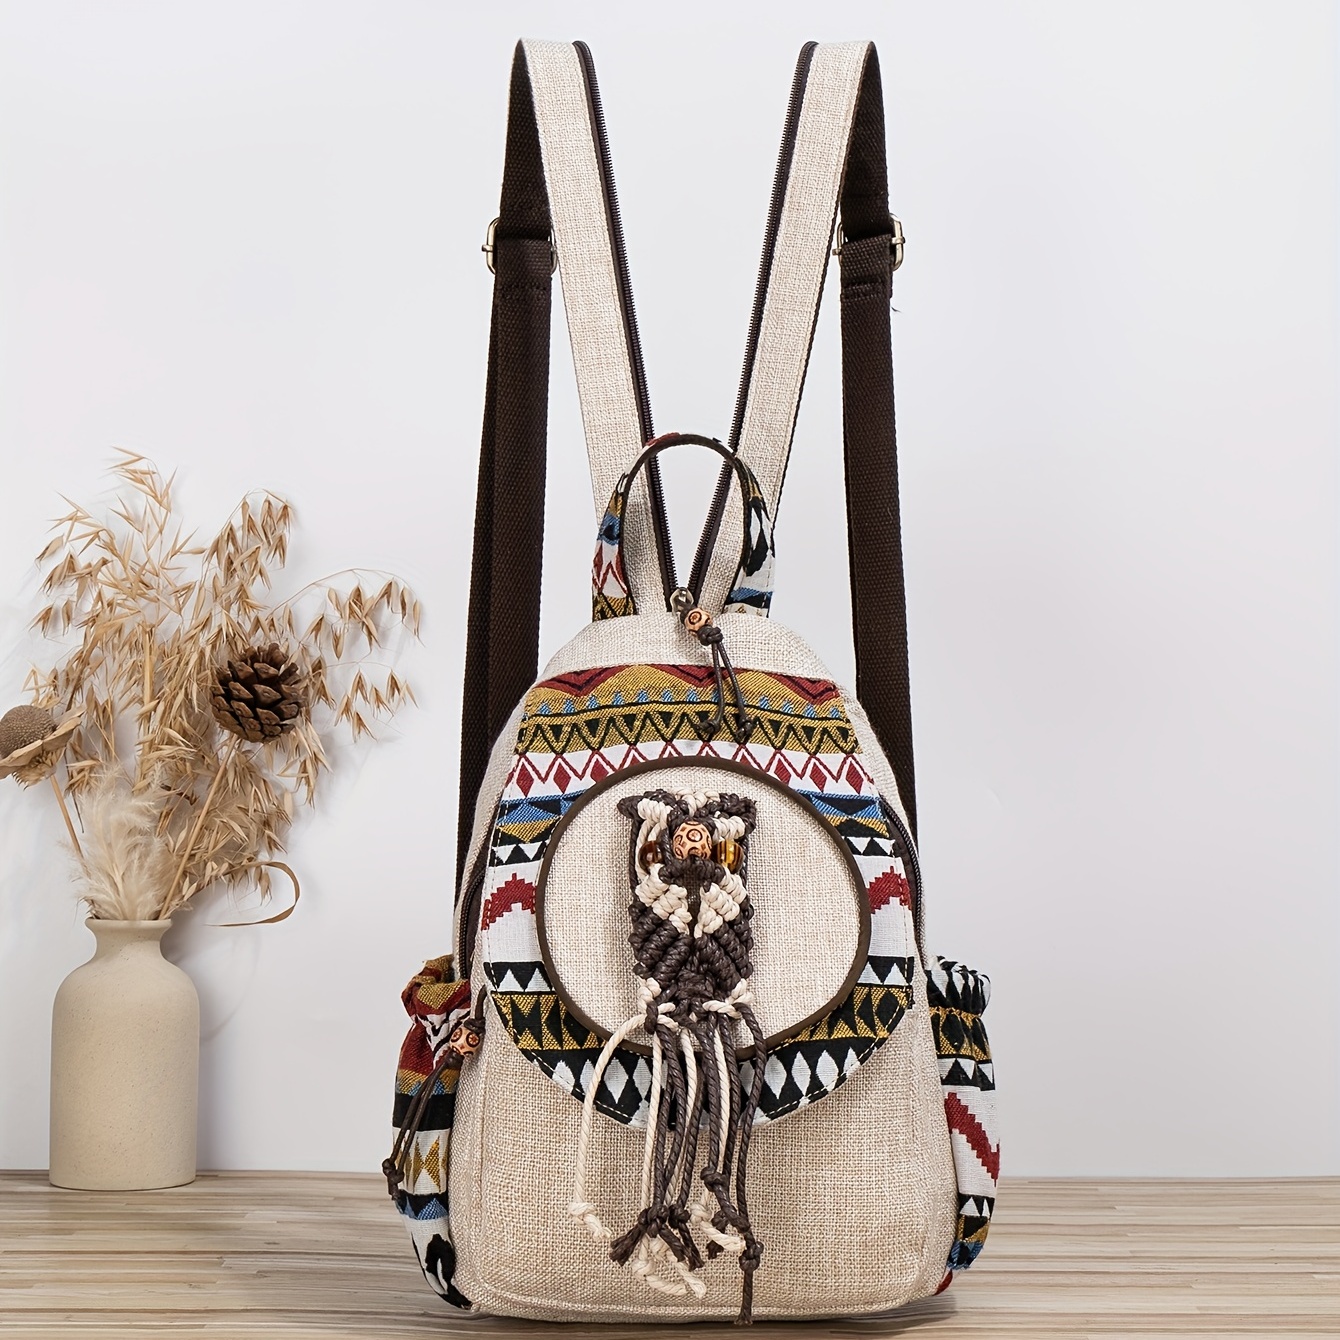 Rucksack by Vintage Boho Bags